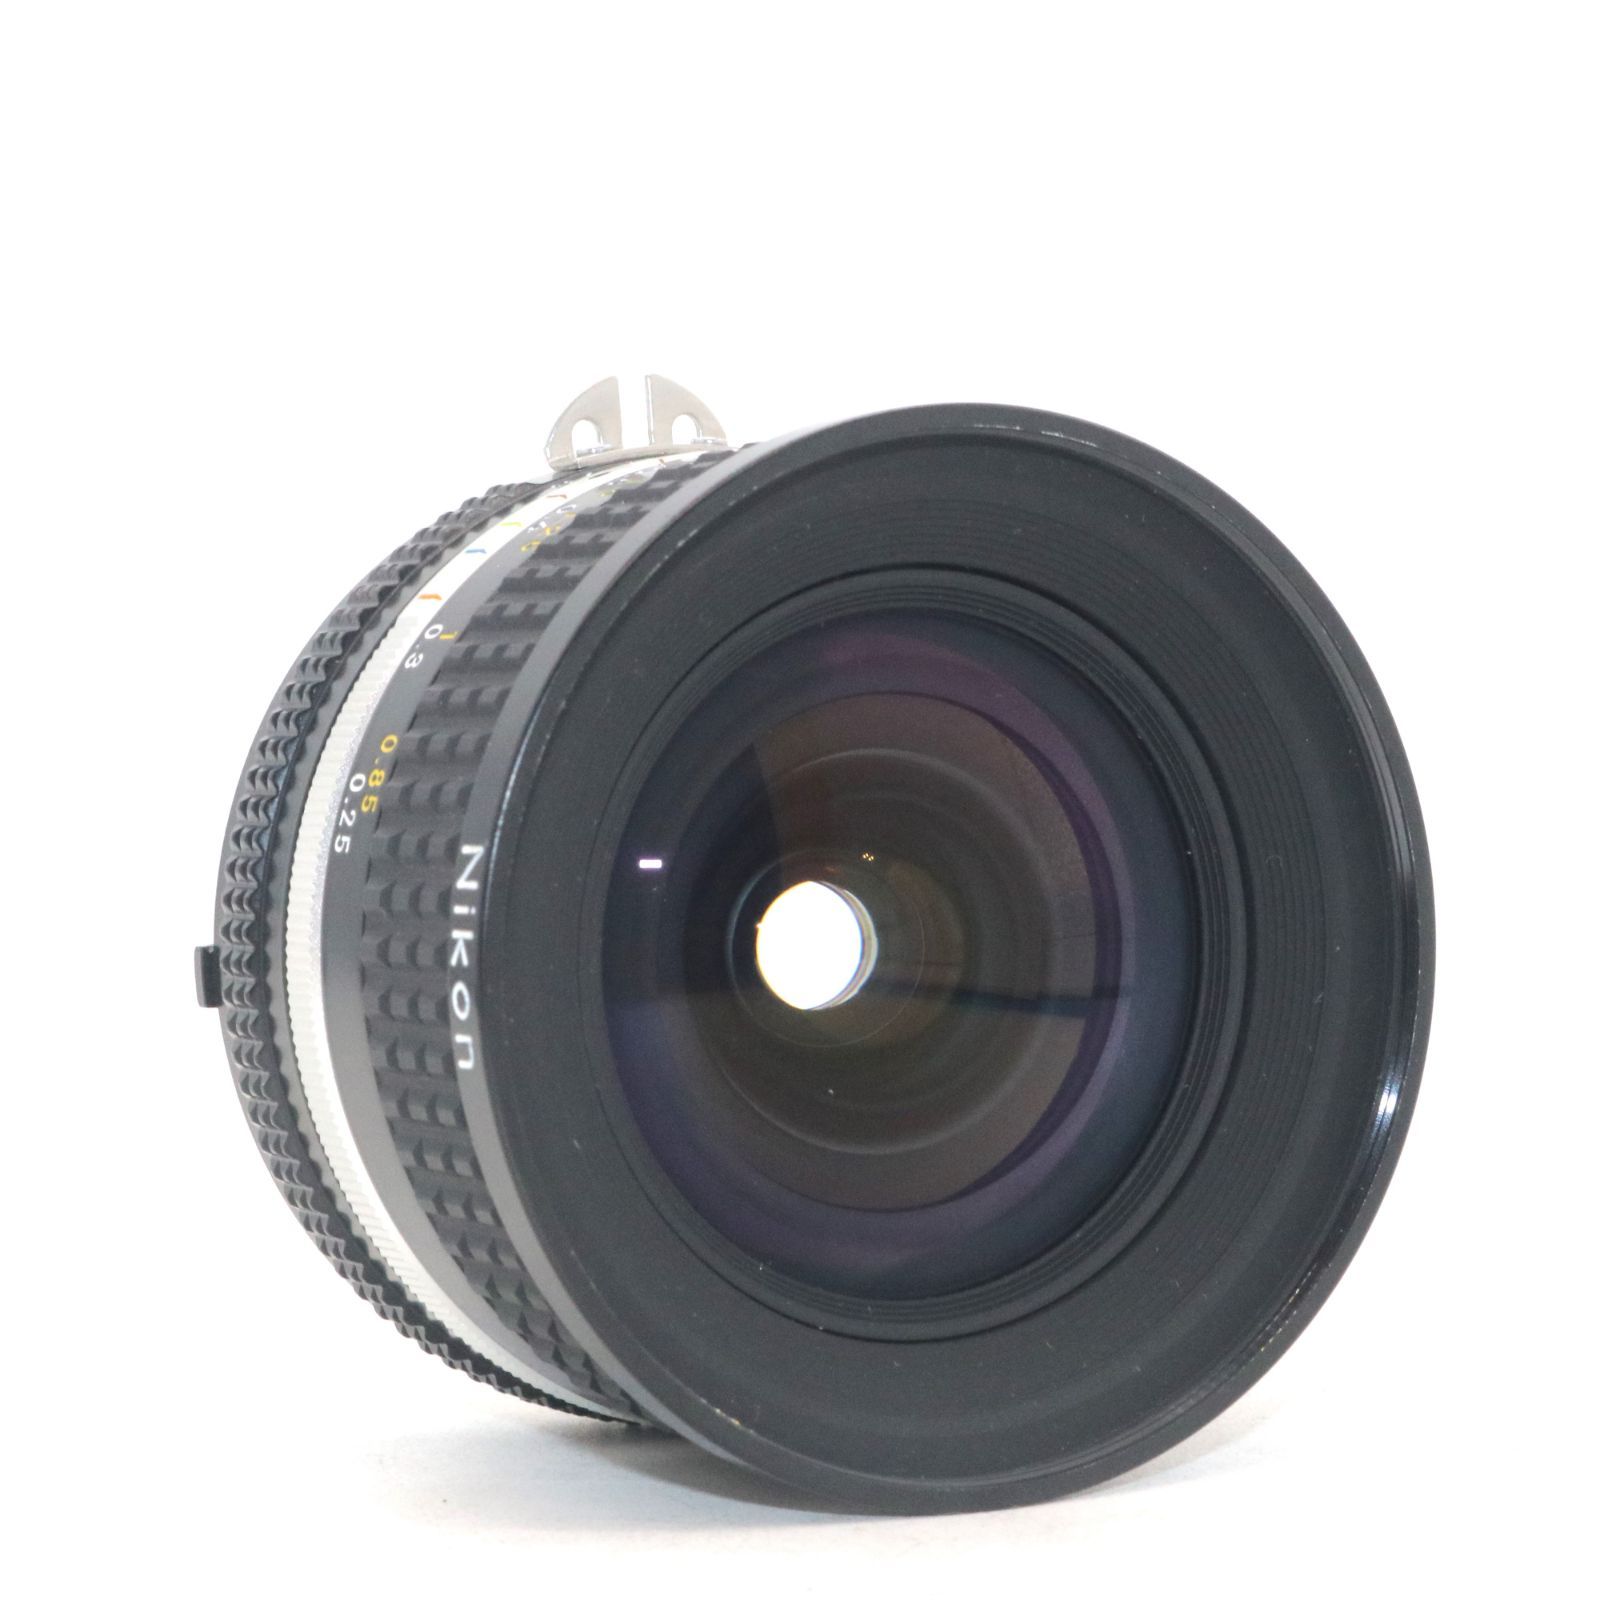 美品 箱付き Nikon Nikkor Ai-S Ais 20mm f/2.8 広角 単焦点